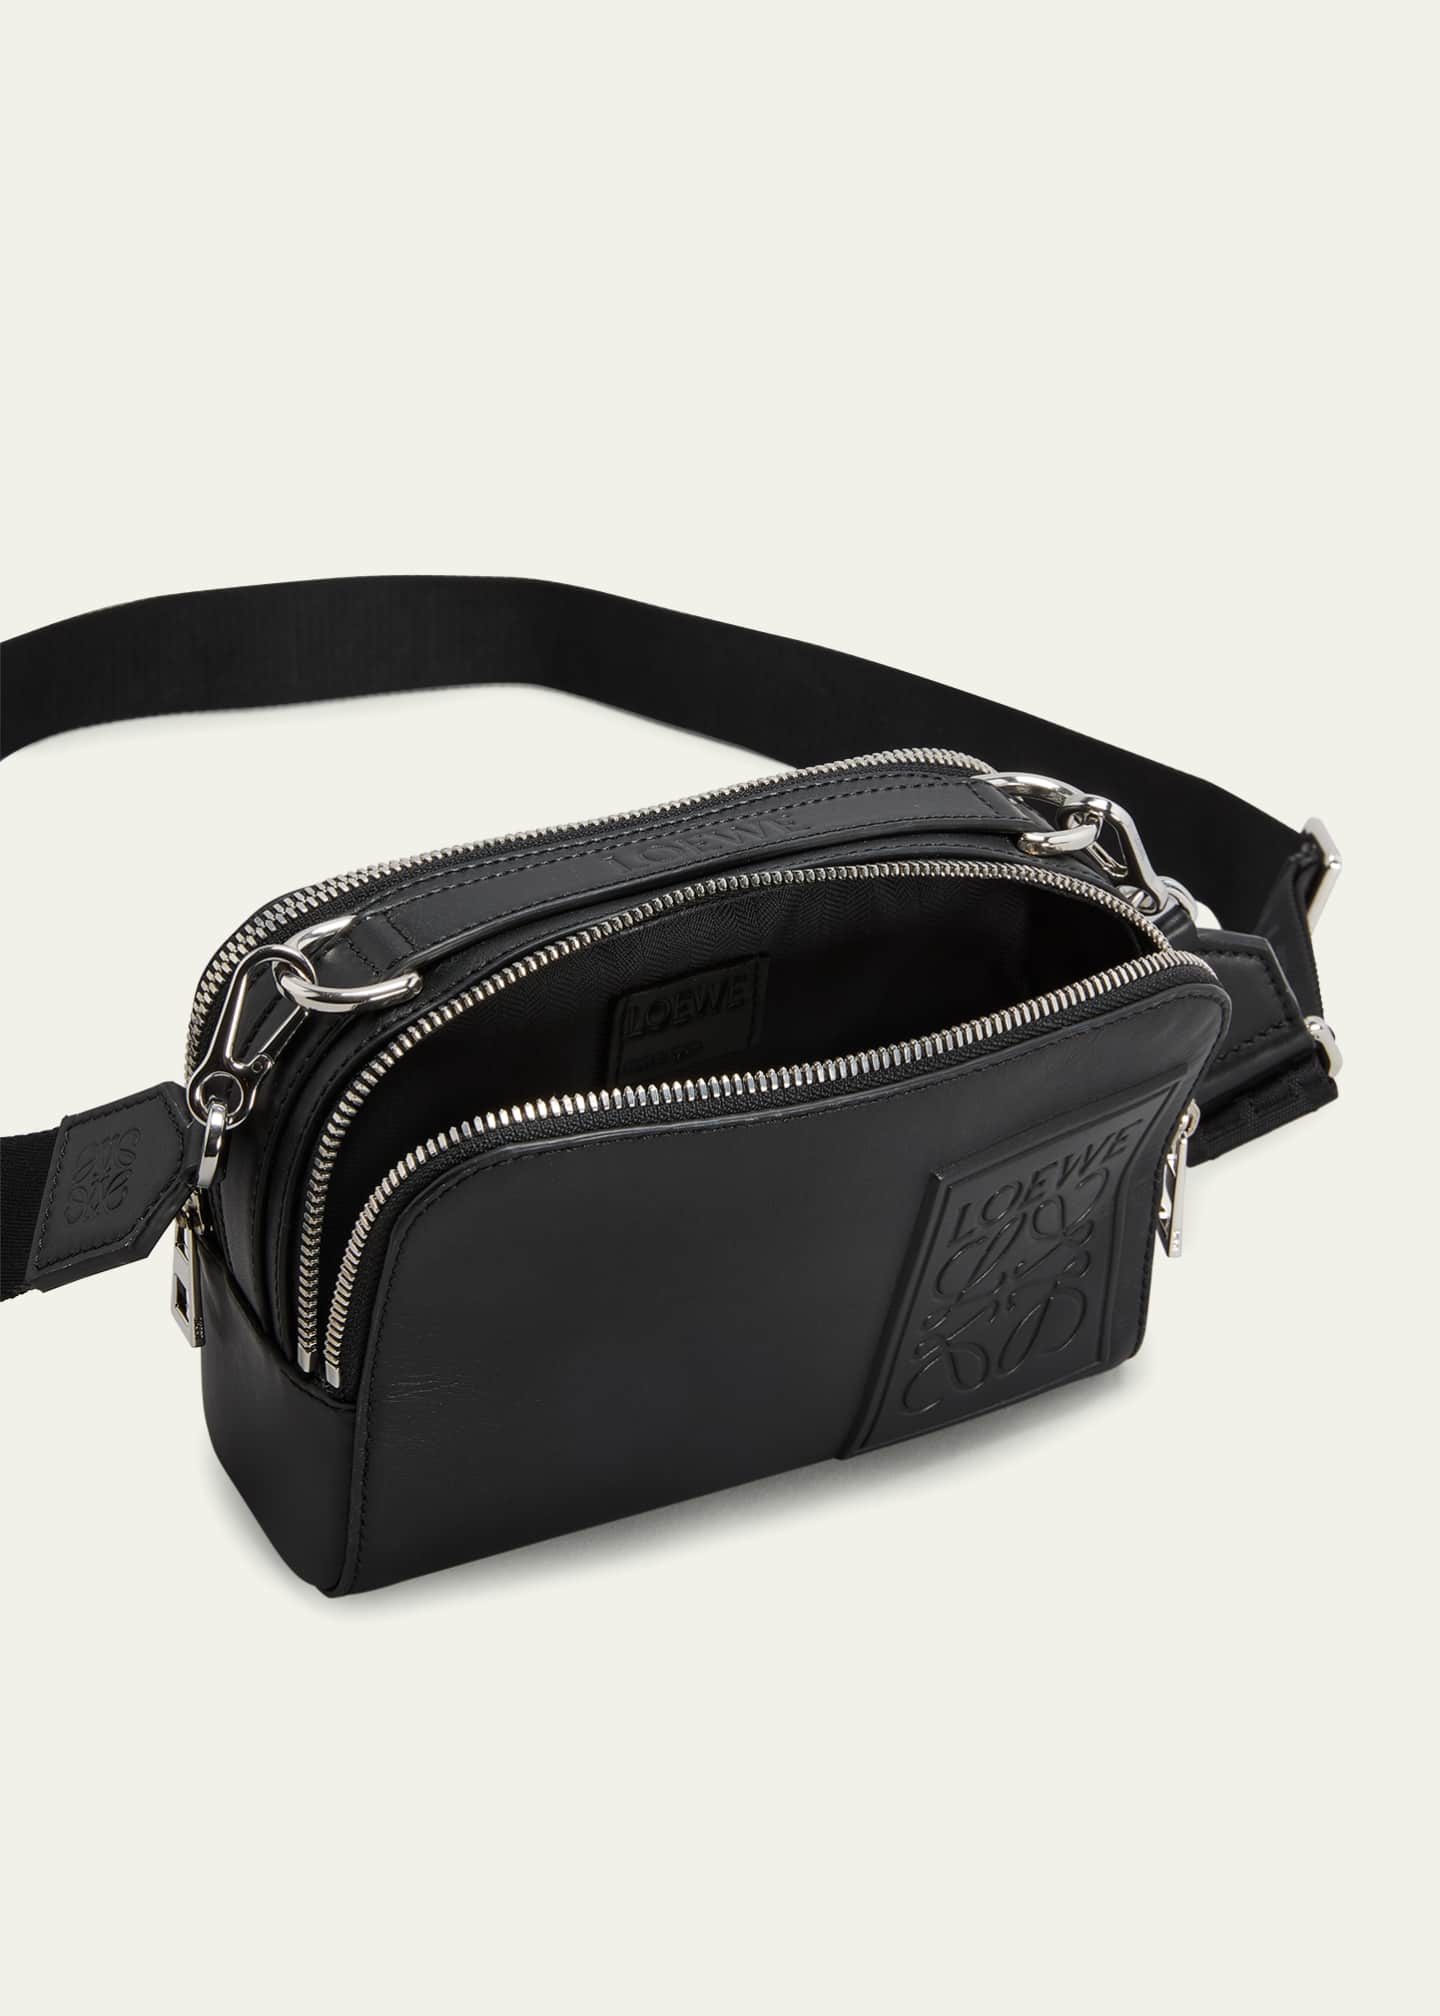 Loewe Men's Mini Camera Crossbody Bag